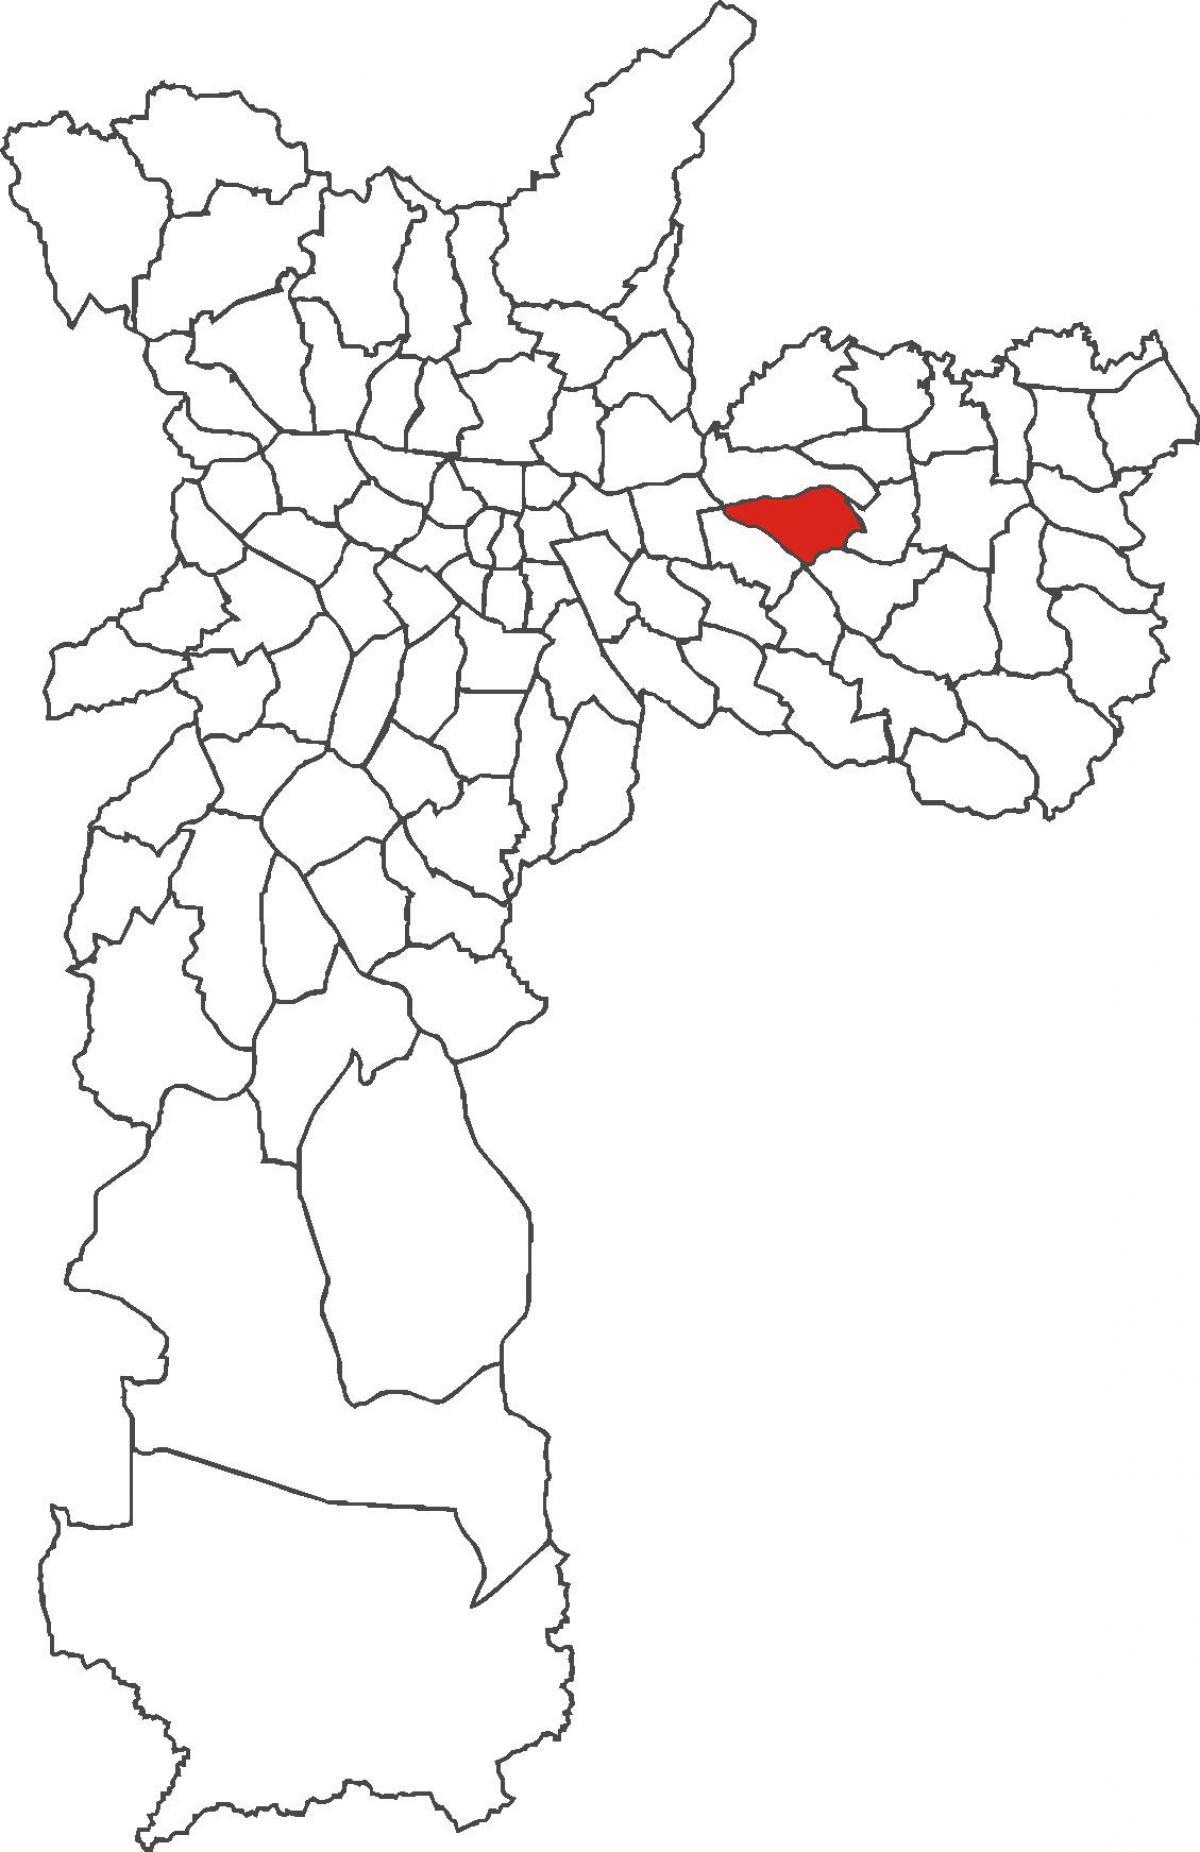 નકશો Vila માટિલ્ડે જિલ્લા